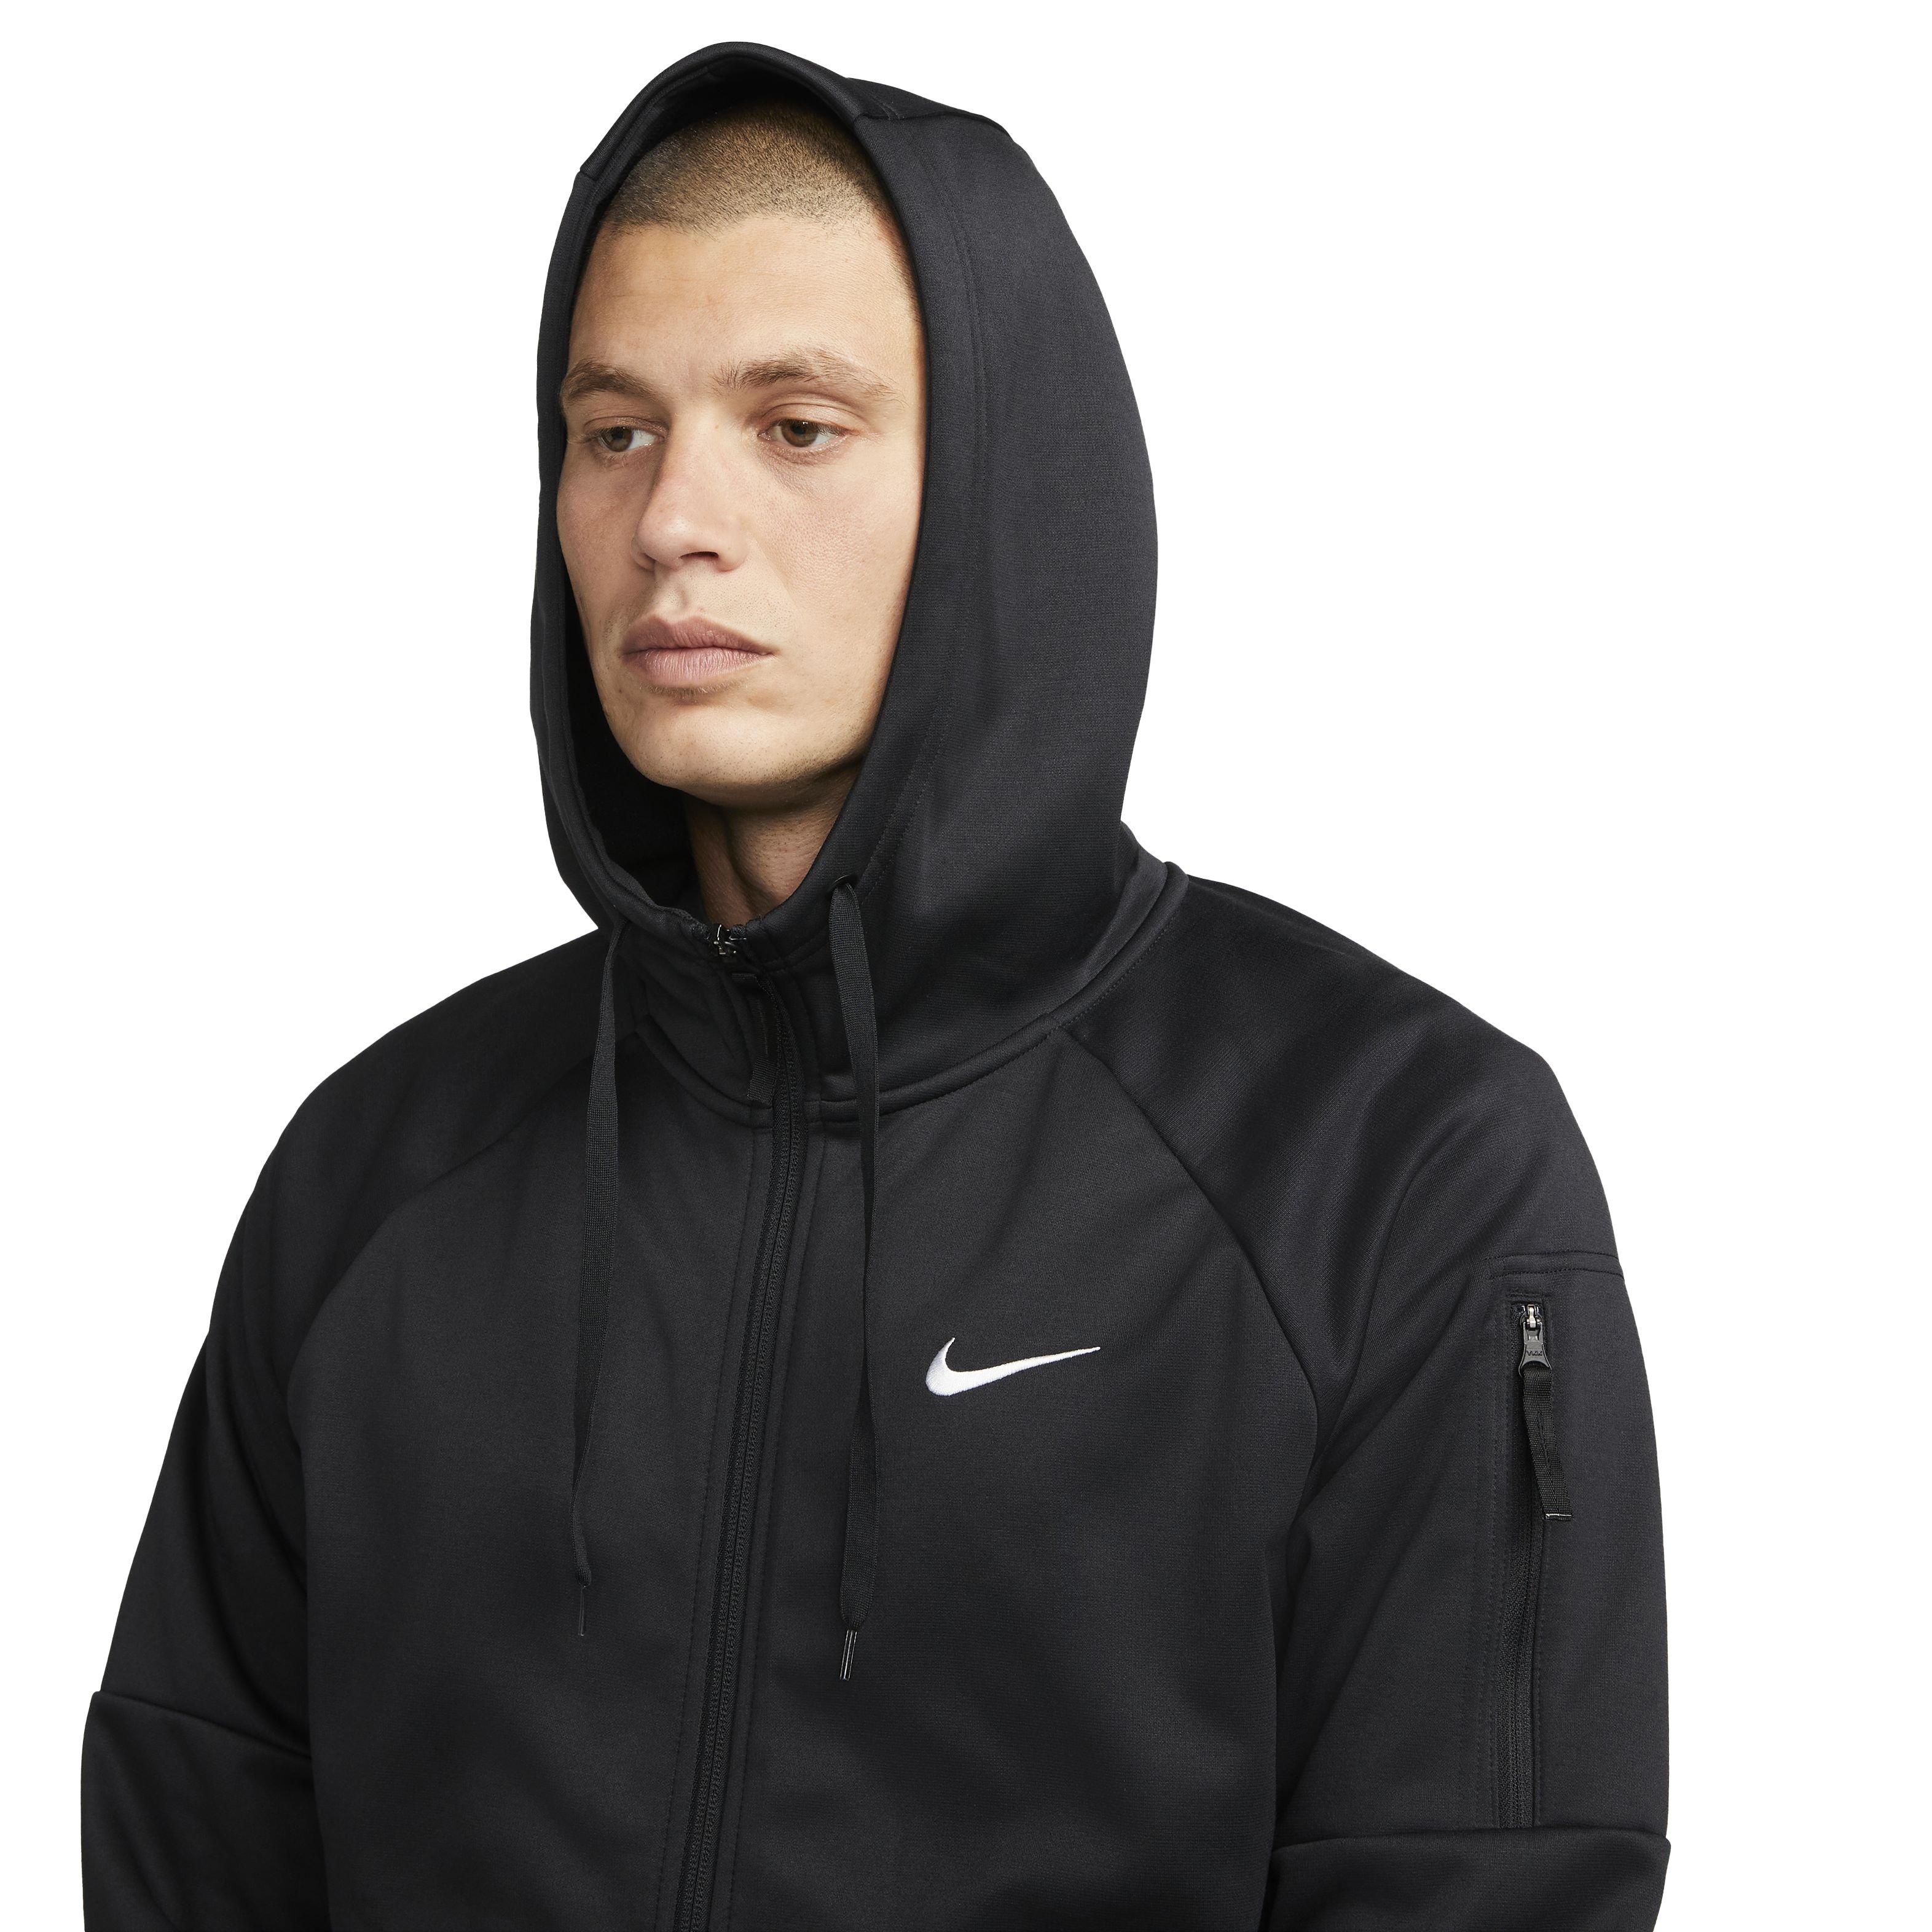 Men's Nike Therma-FIT Fleece Full-Zip Training Hoodie